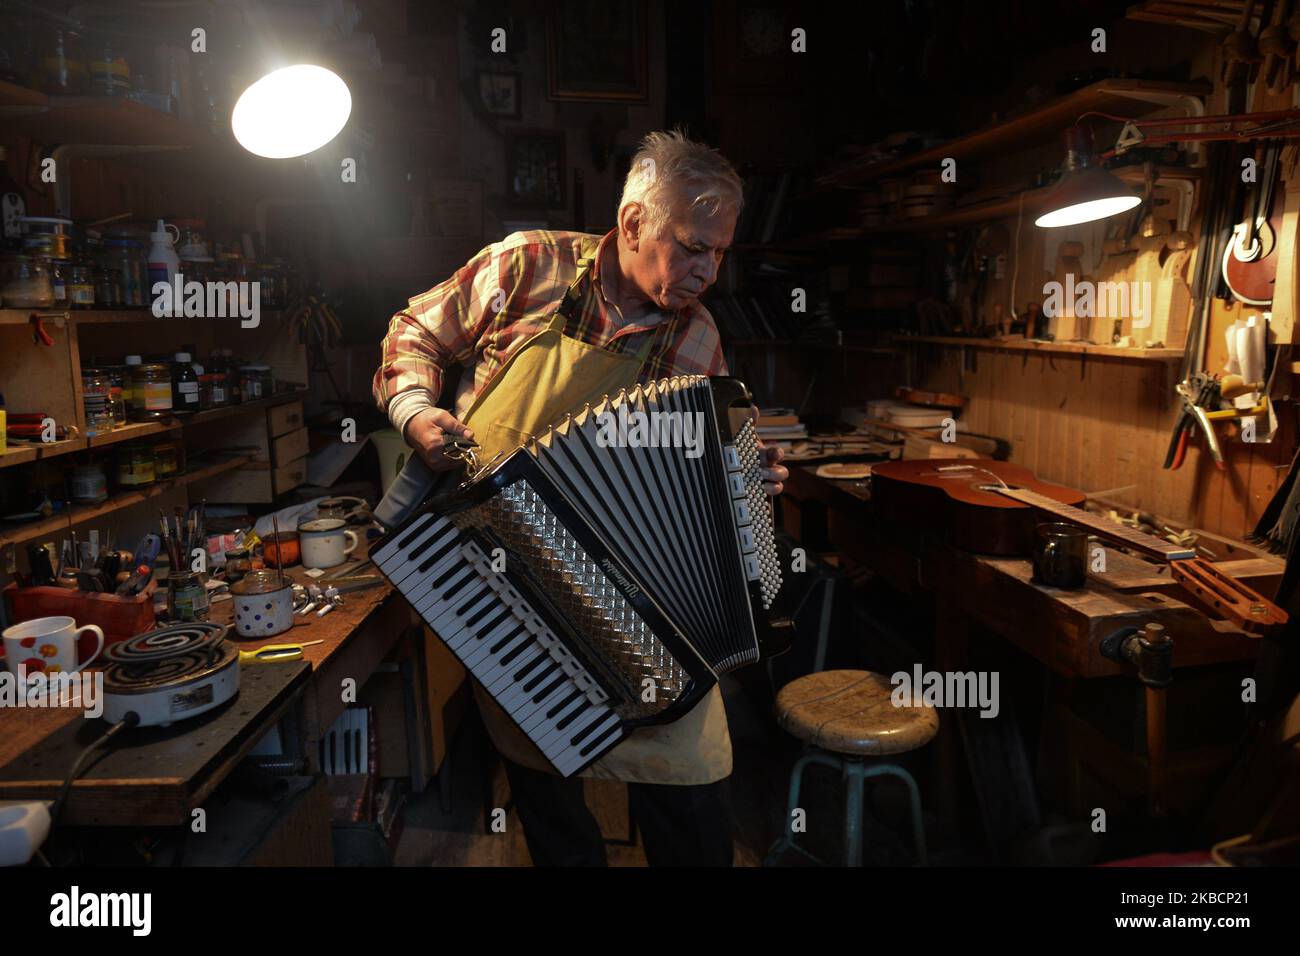 Jozef Gmyrek (de 71 años), ex actor teatral y luthier de mucho tiempo,  sintoniza un acordeón en su taller. Su trabajo no es un trabajo sino una  pasión que lo ha mantenido